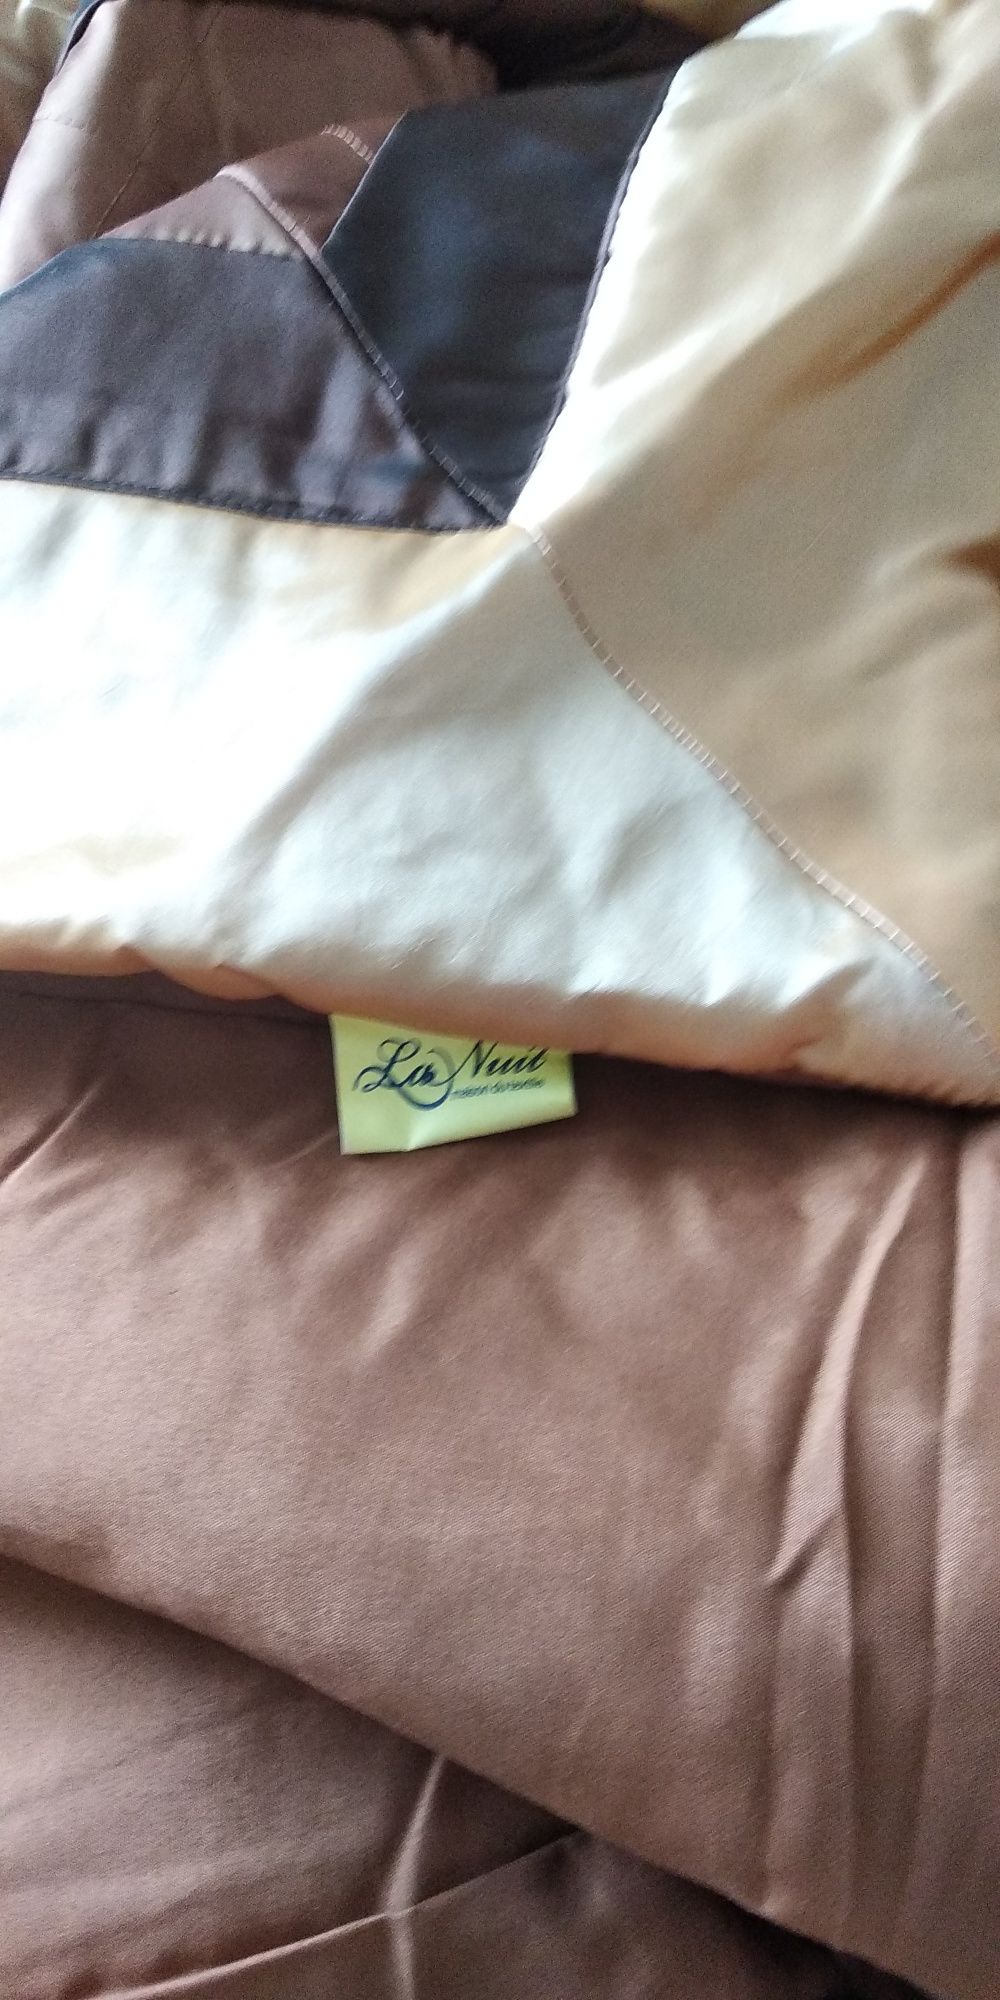 Декоративний набір на ліжко, покривало з подушками